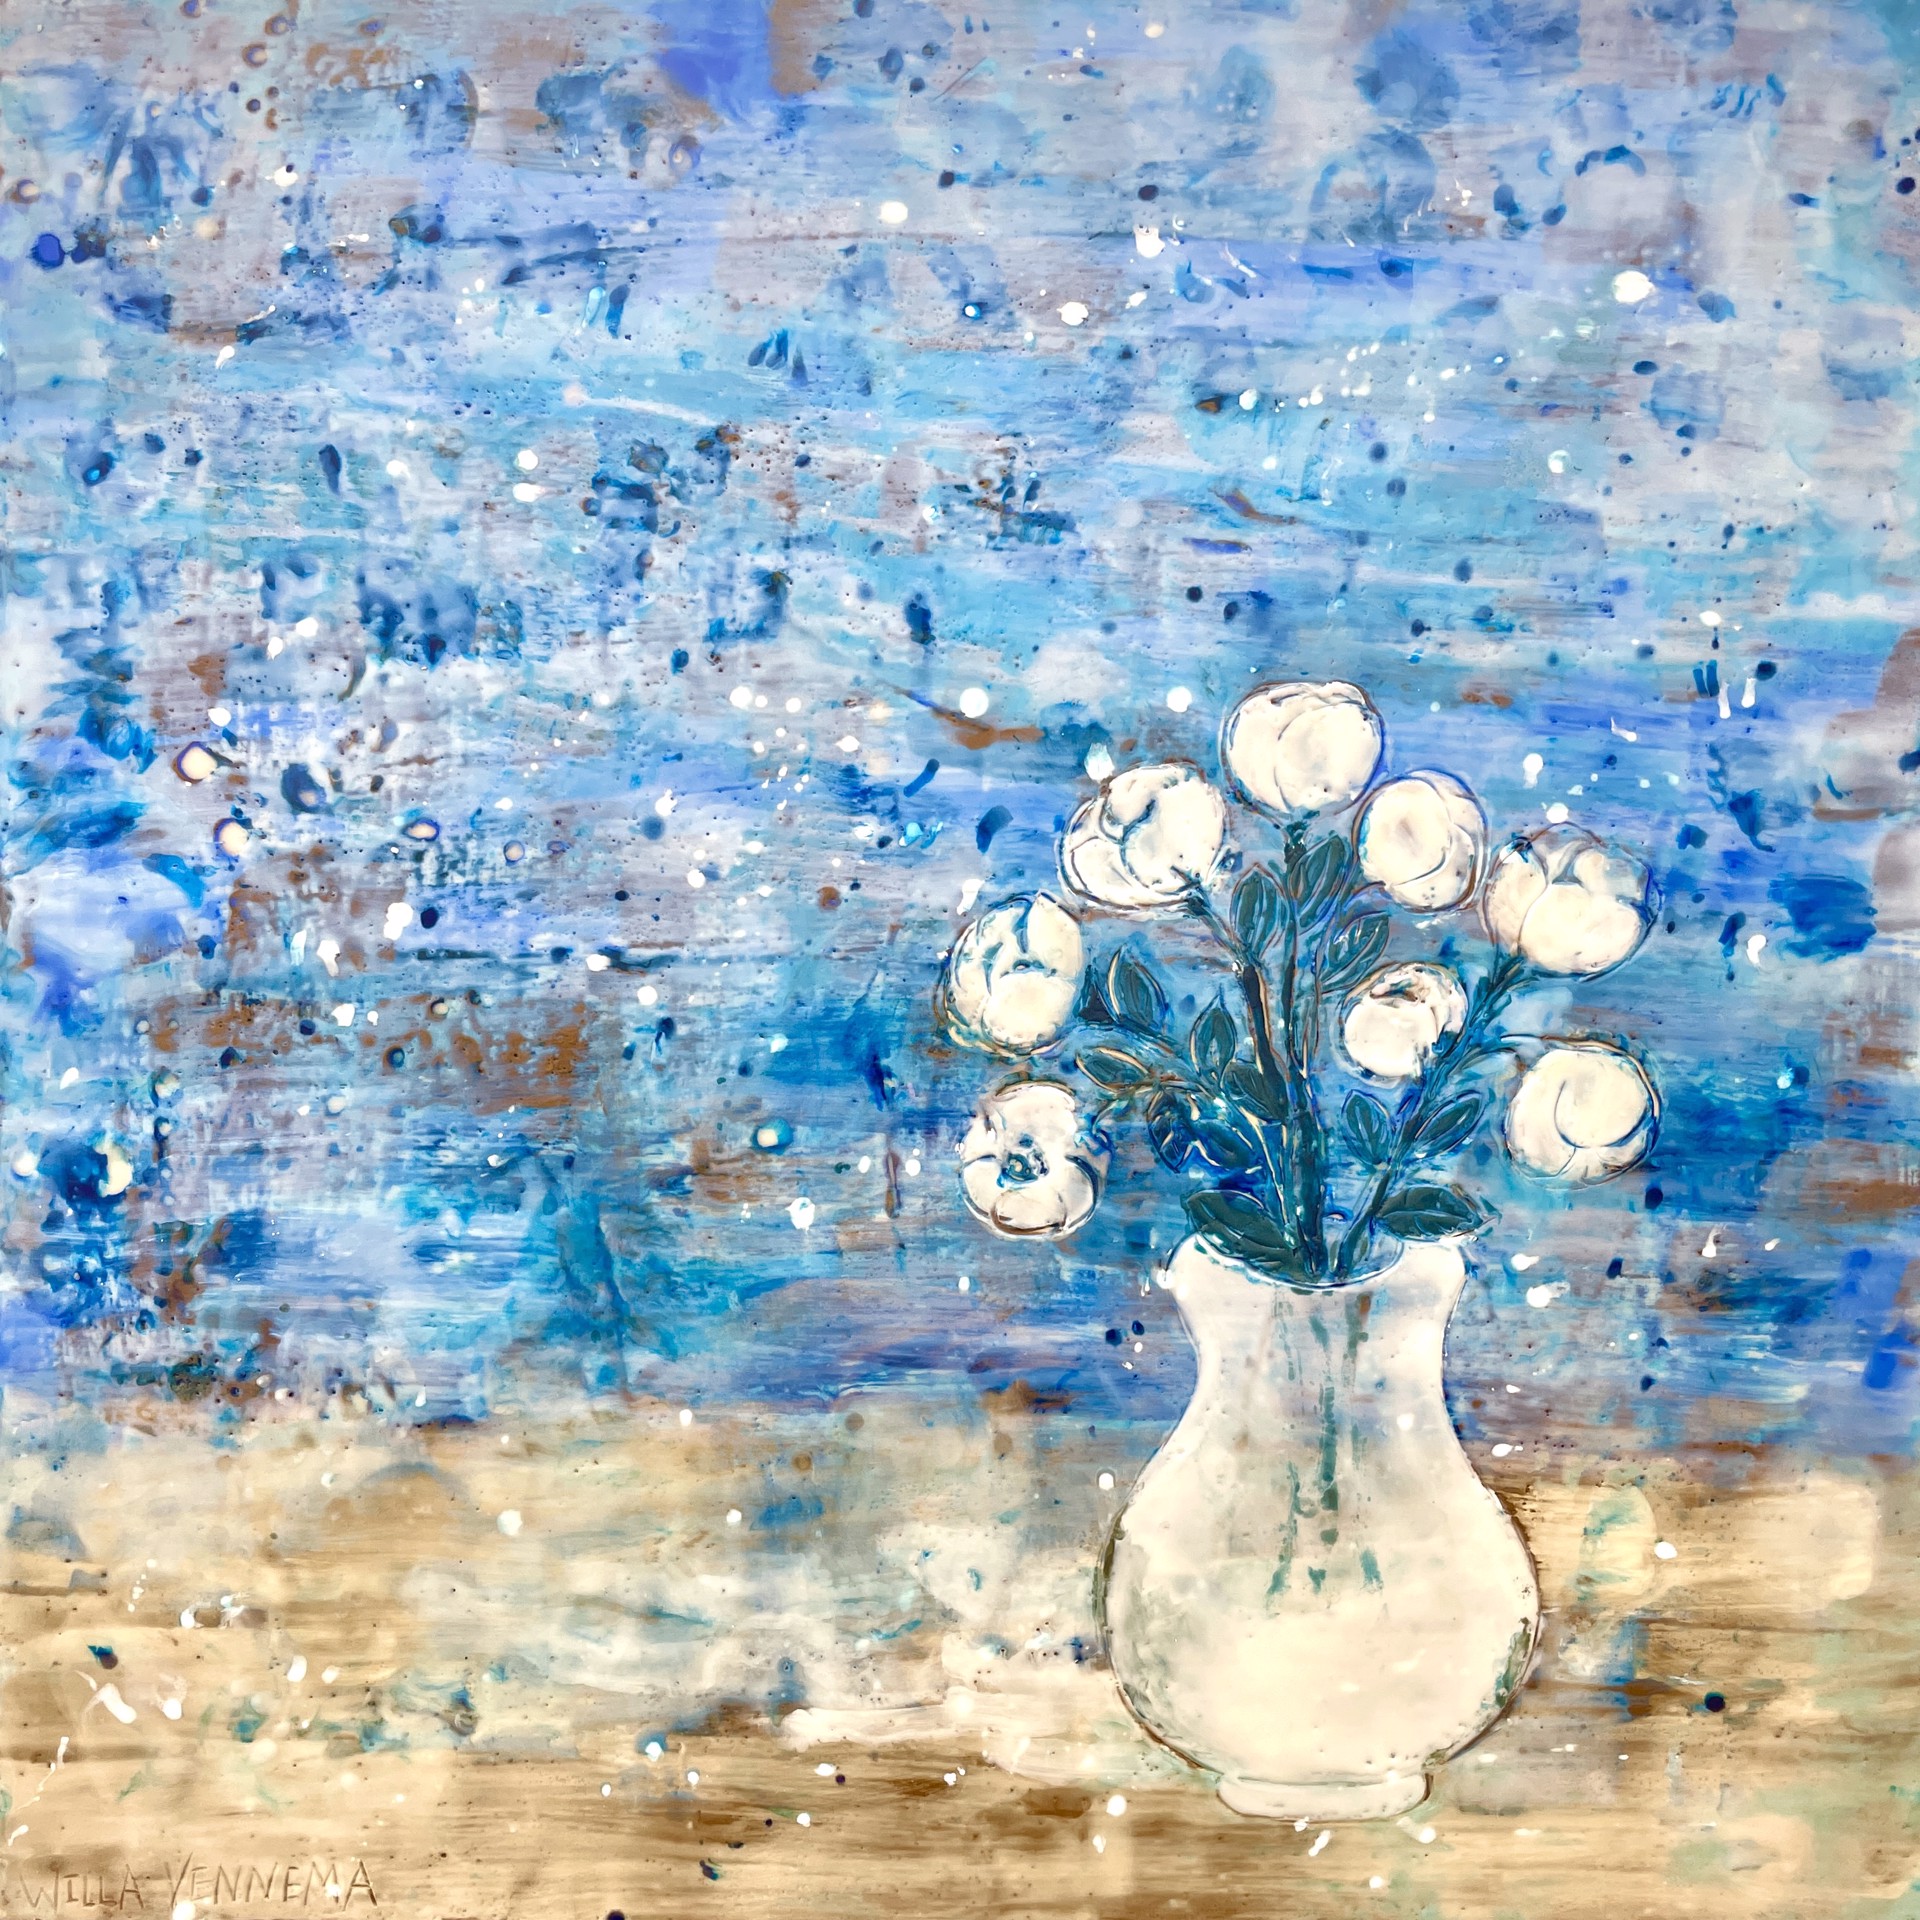 White Rose, White Vase by Willa Vennema